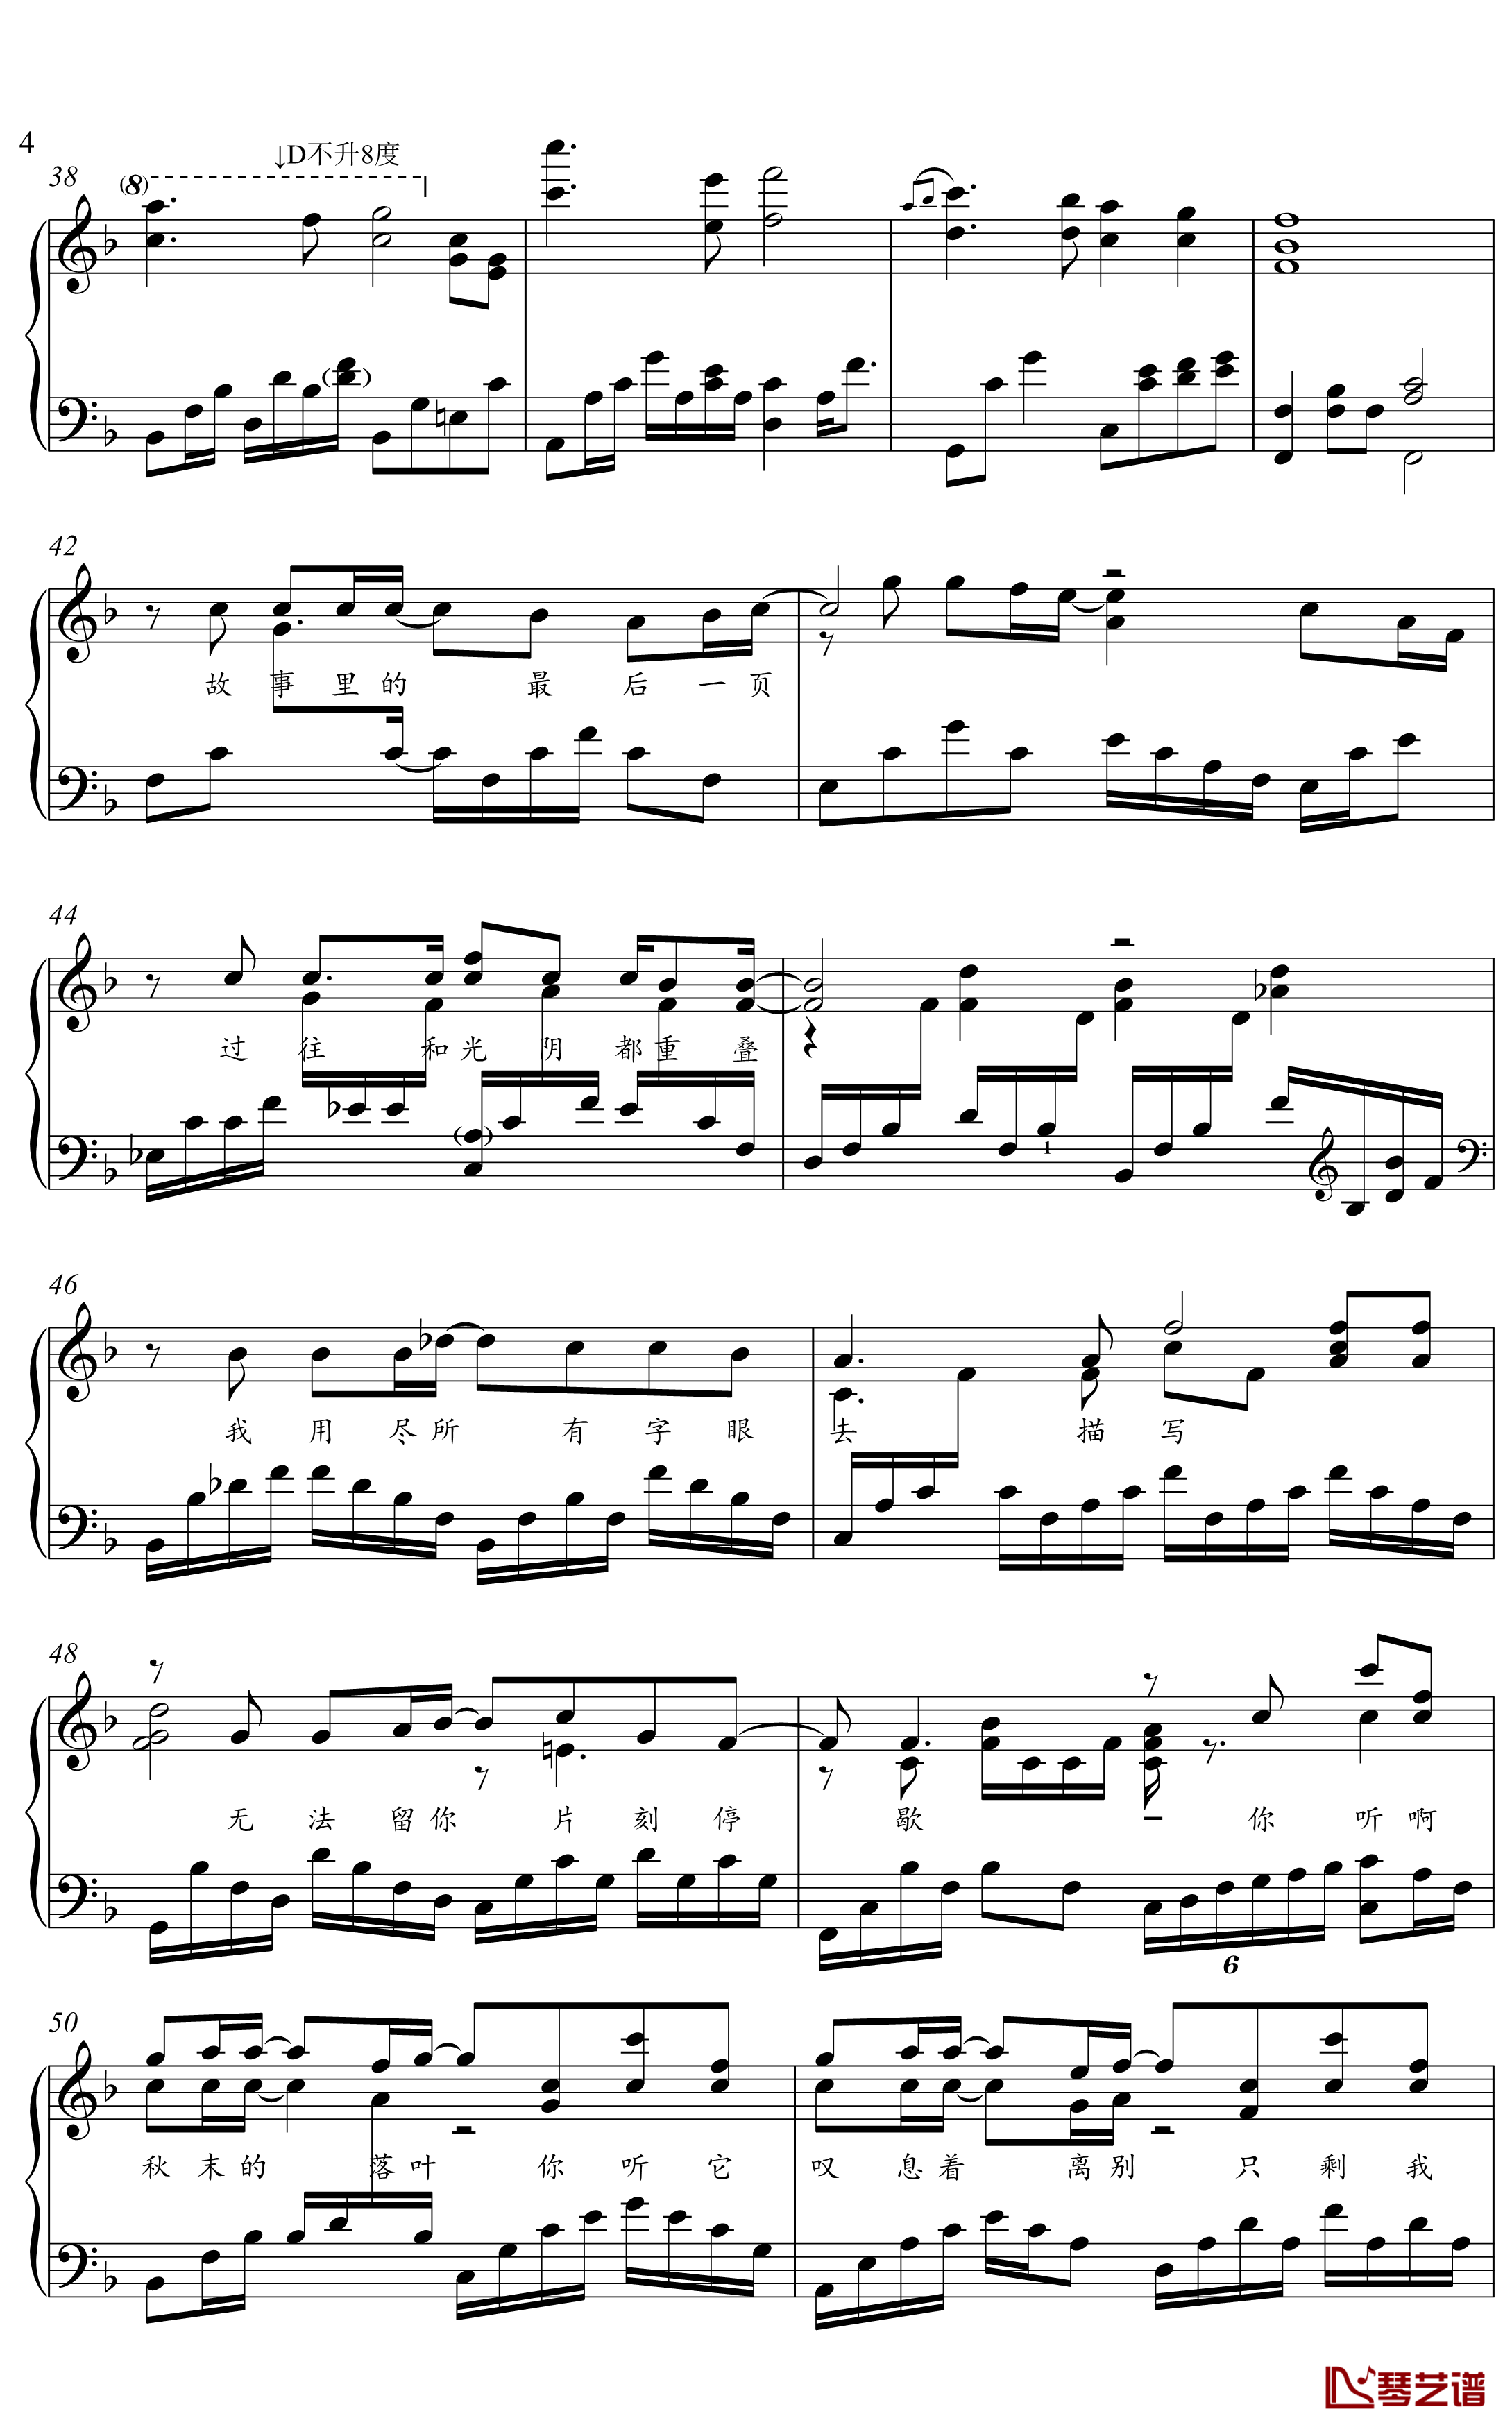 冬眠钢琴谱-金老师独奏谱2003014